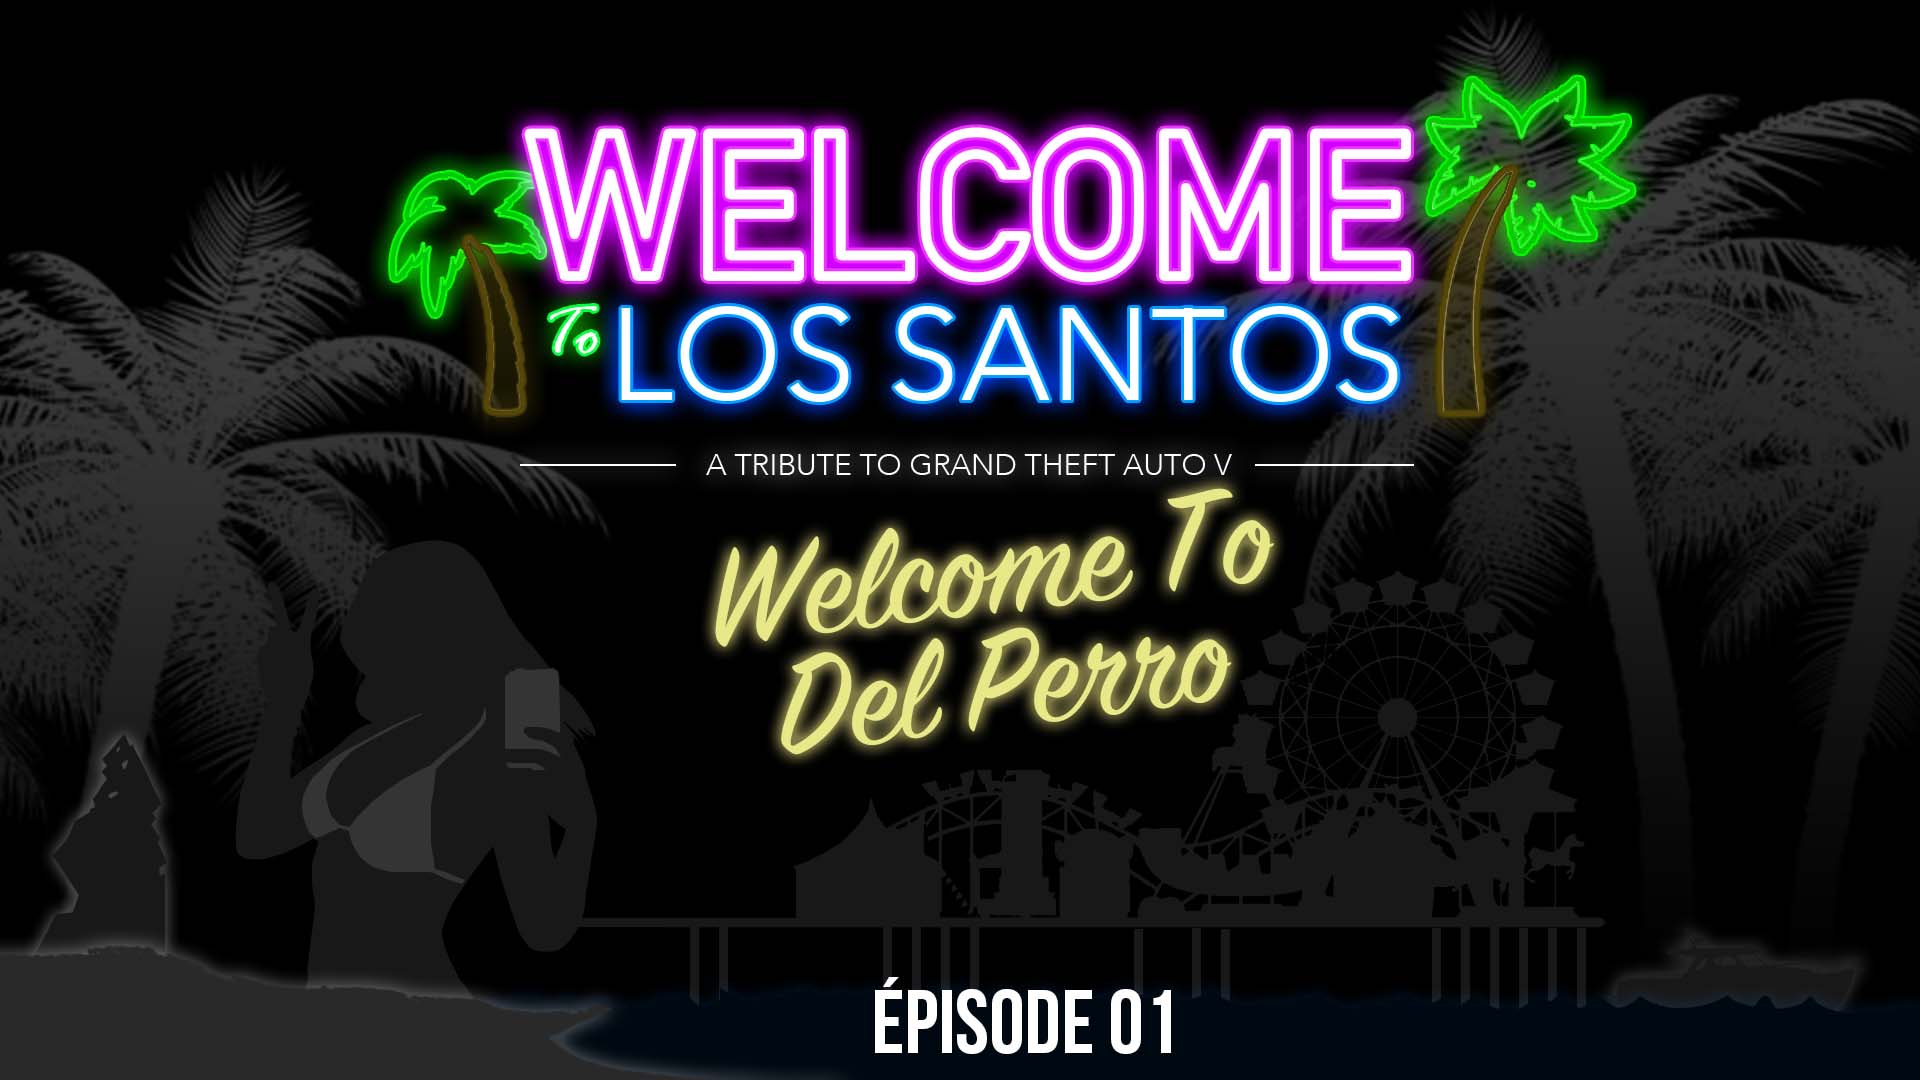 Welcome To Los Santos Episode 01 Del Perro